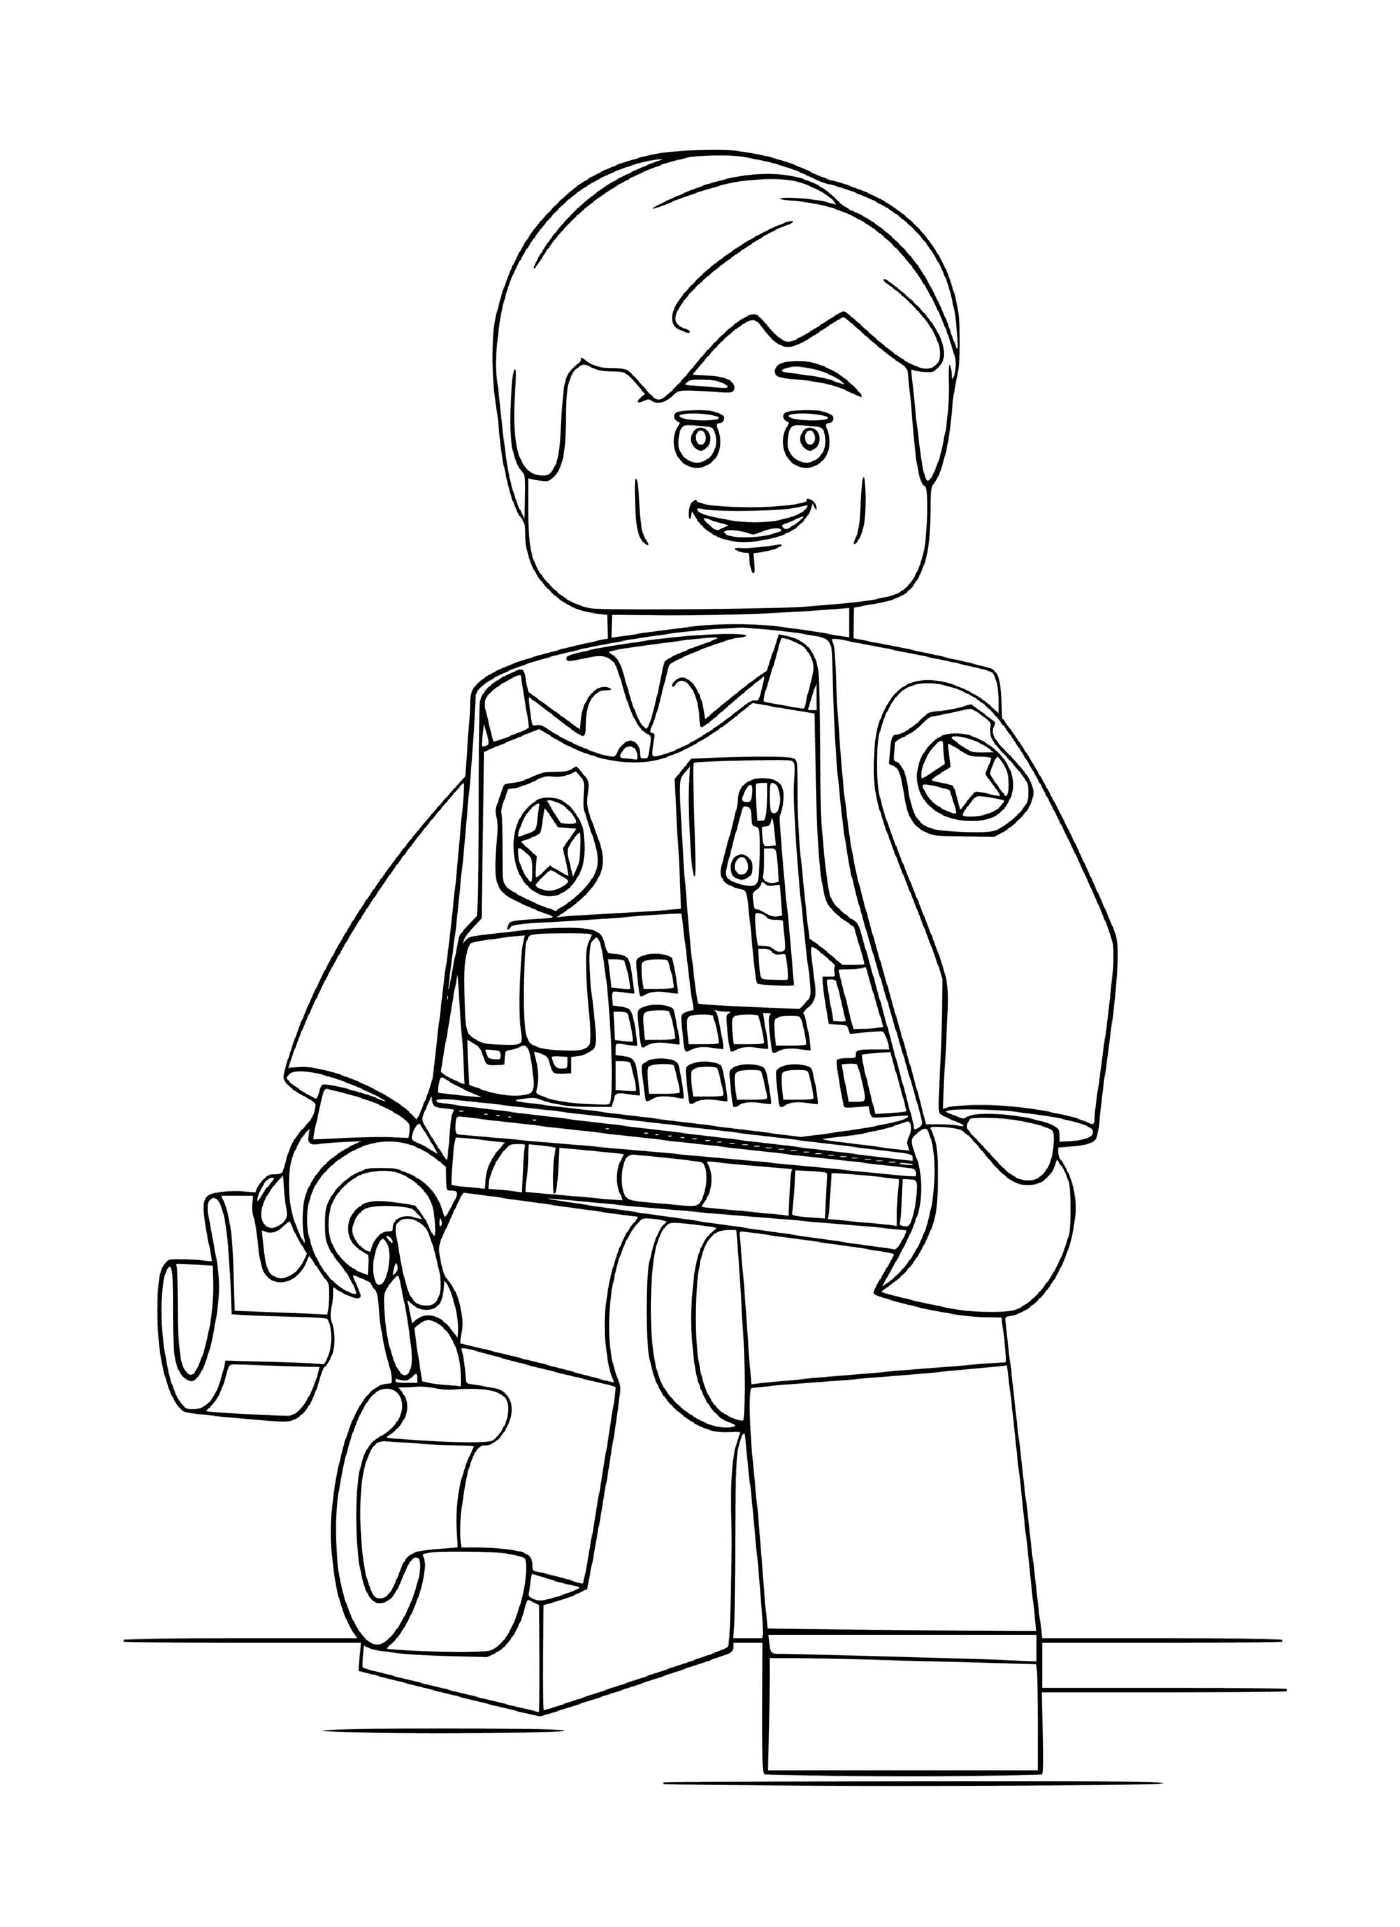   Personnage Lego policier menotté 